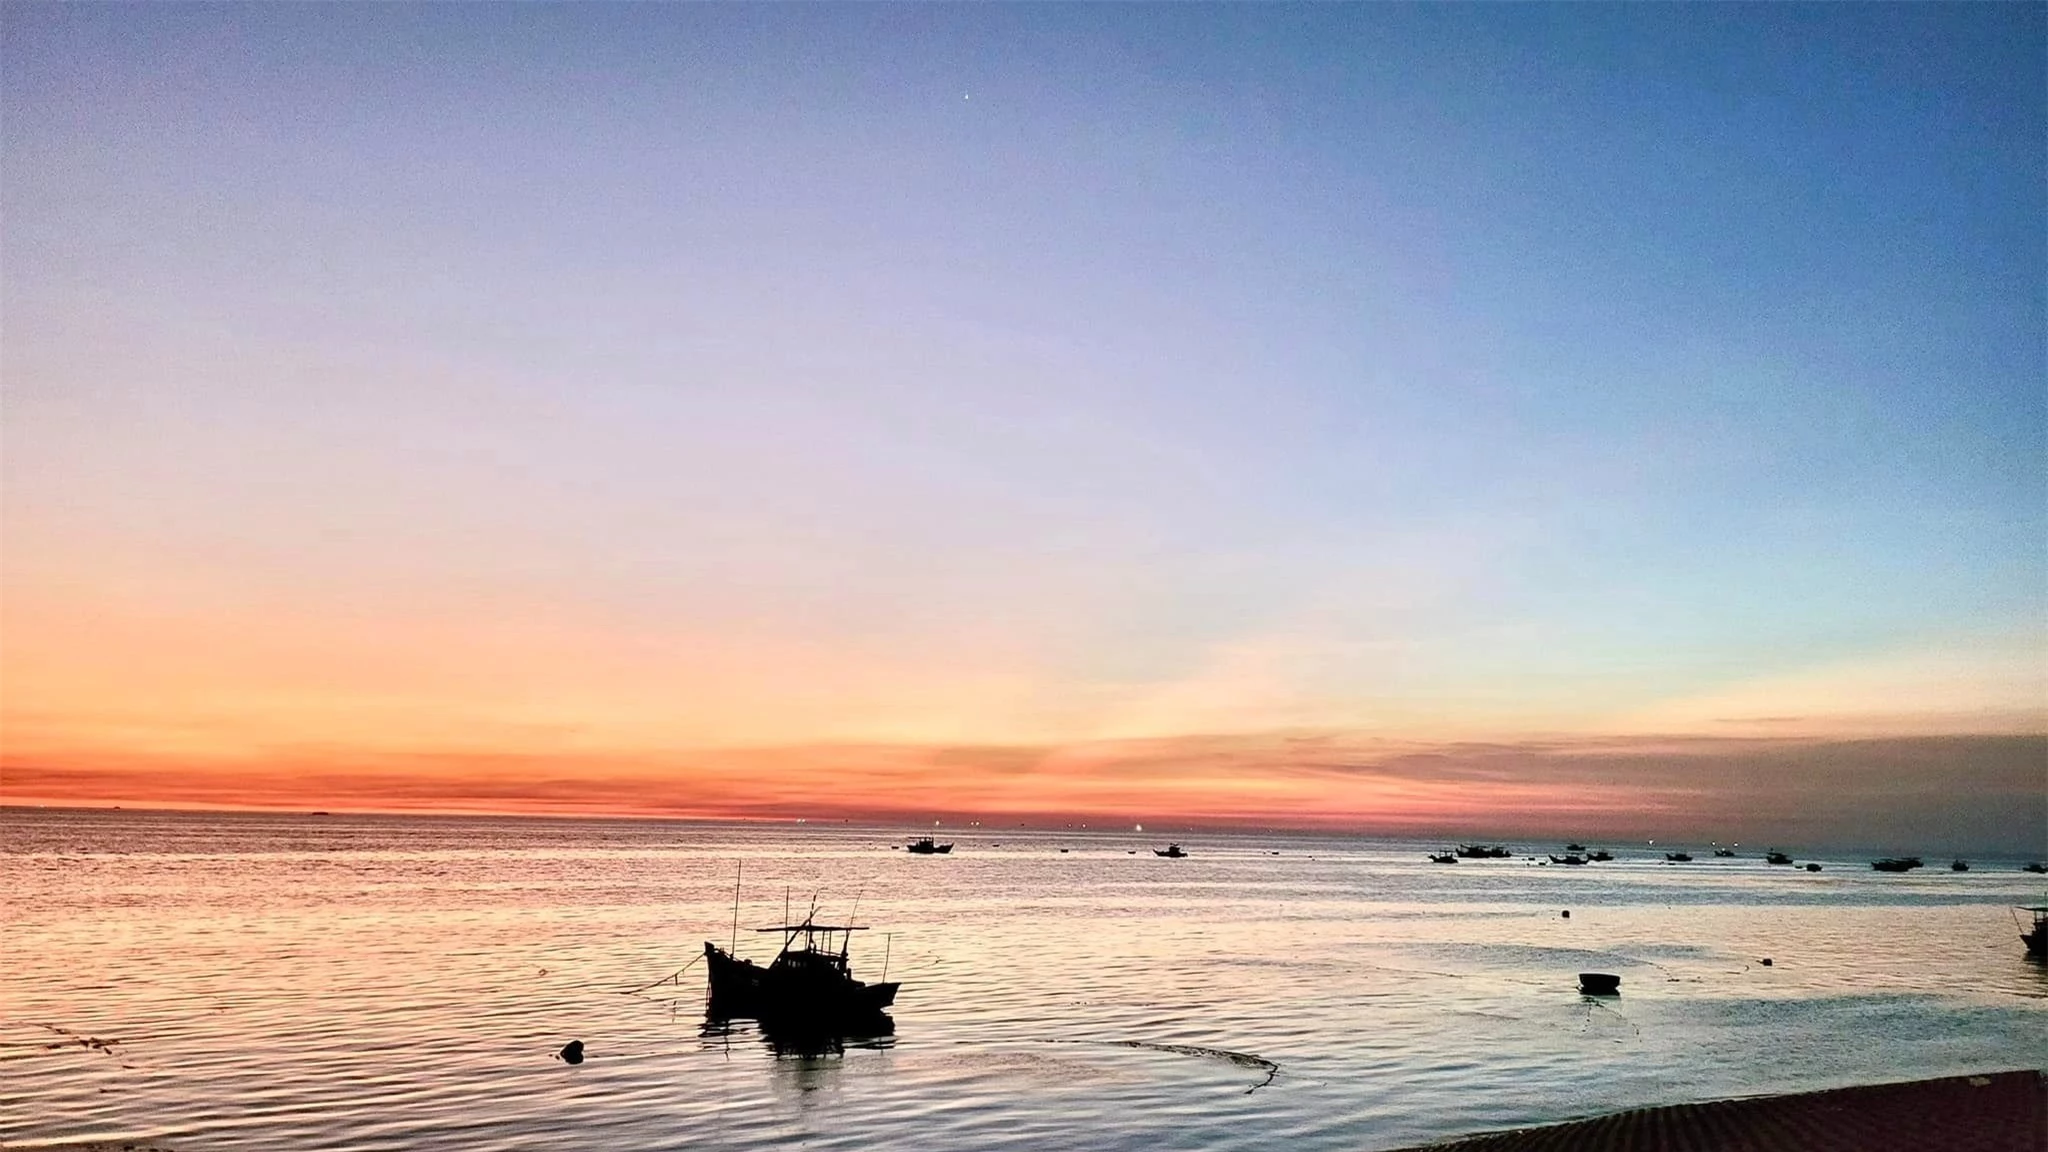 Khám phá thêm nhiều góc ảnh đẹp và lạ ở đảo Phú Quý - 7